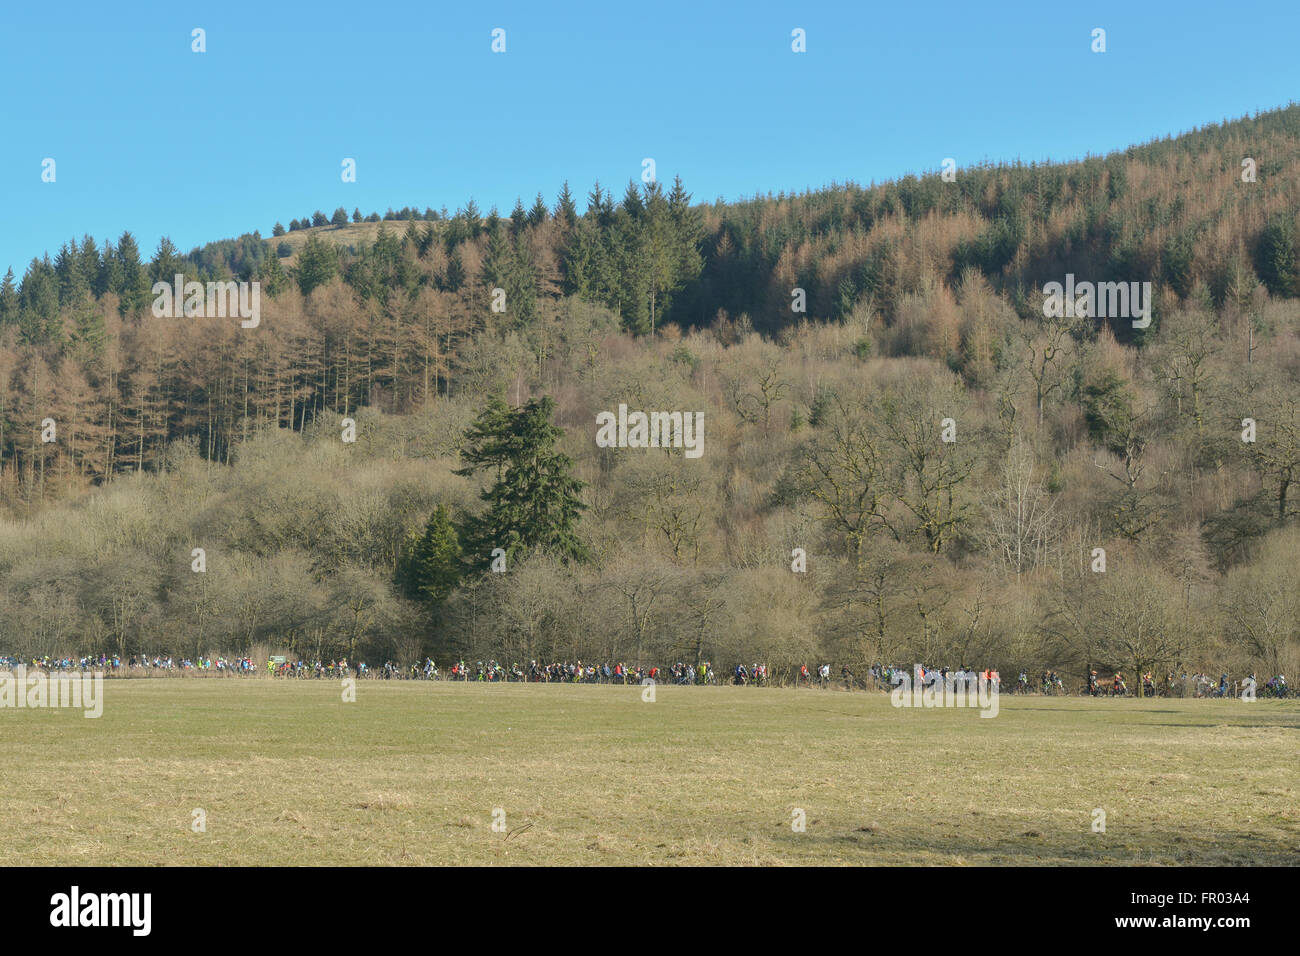 Æ Forêt, Dumfries, Ecosse - 20 mars 2016 : UK - downhill mountainbike concurrents pour le soulèvement de la file d'attente de début de SDA (Scottish Downhill Association) 2016 Series 1 avec un soleil printanier Crédit : Kay Roxby/Alamy Live News Banque D'Images